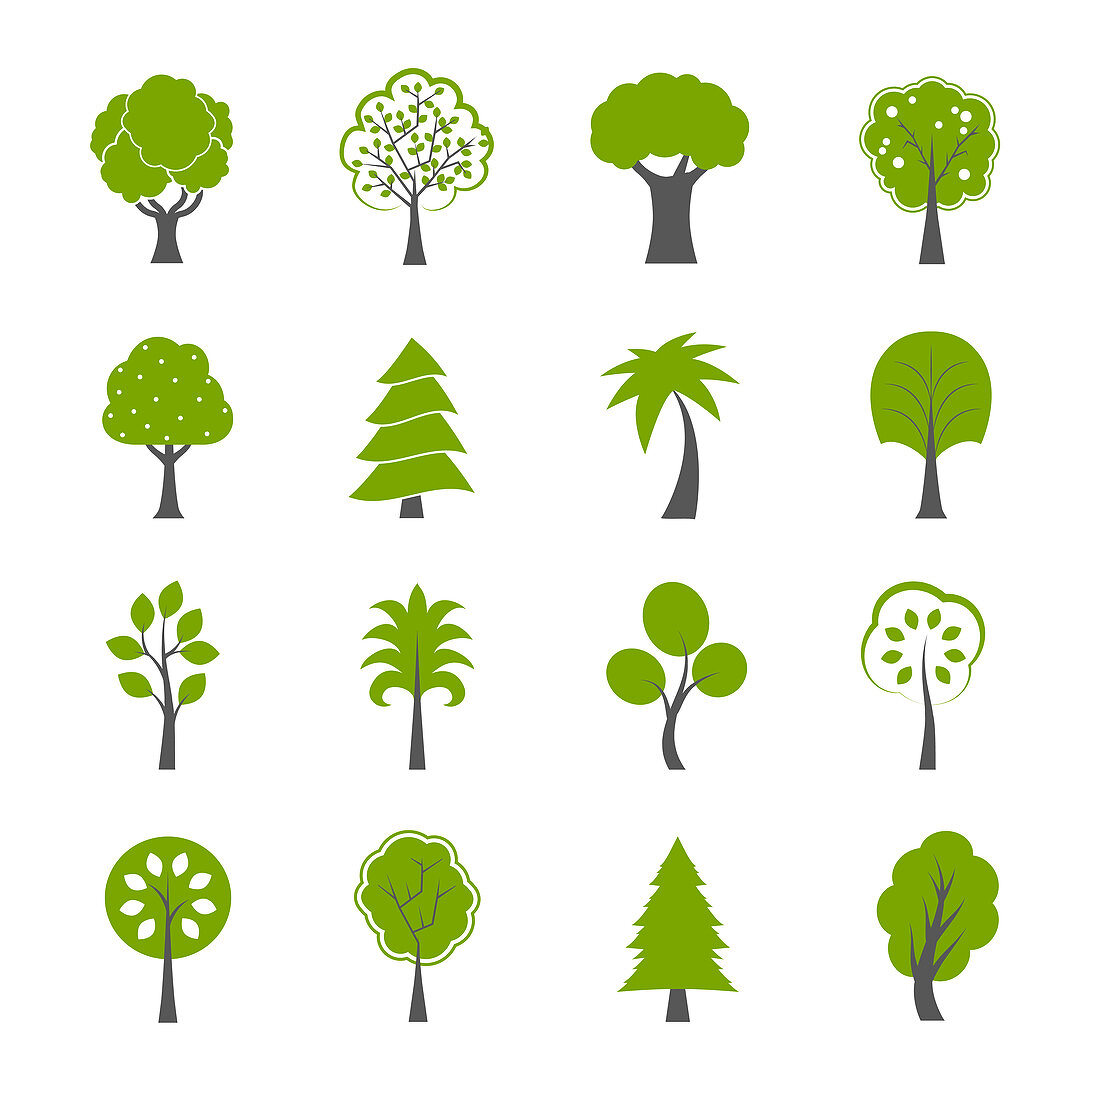 Trees, illustration